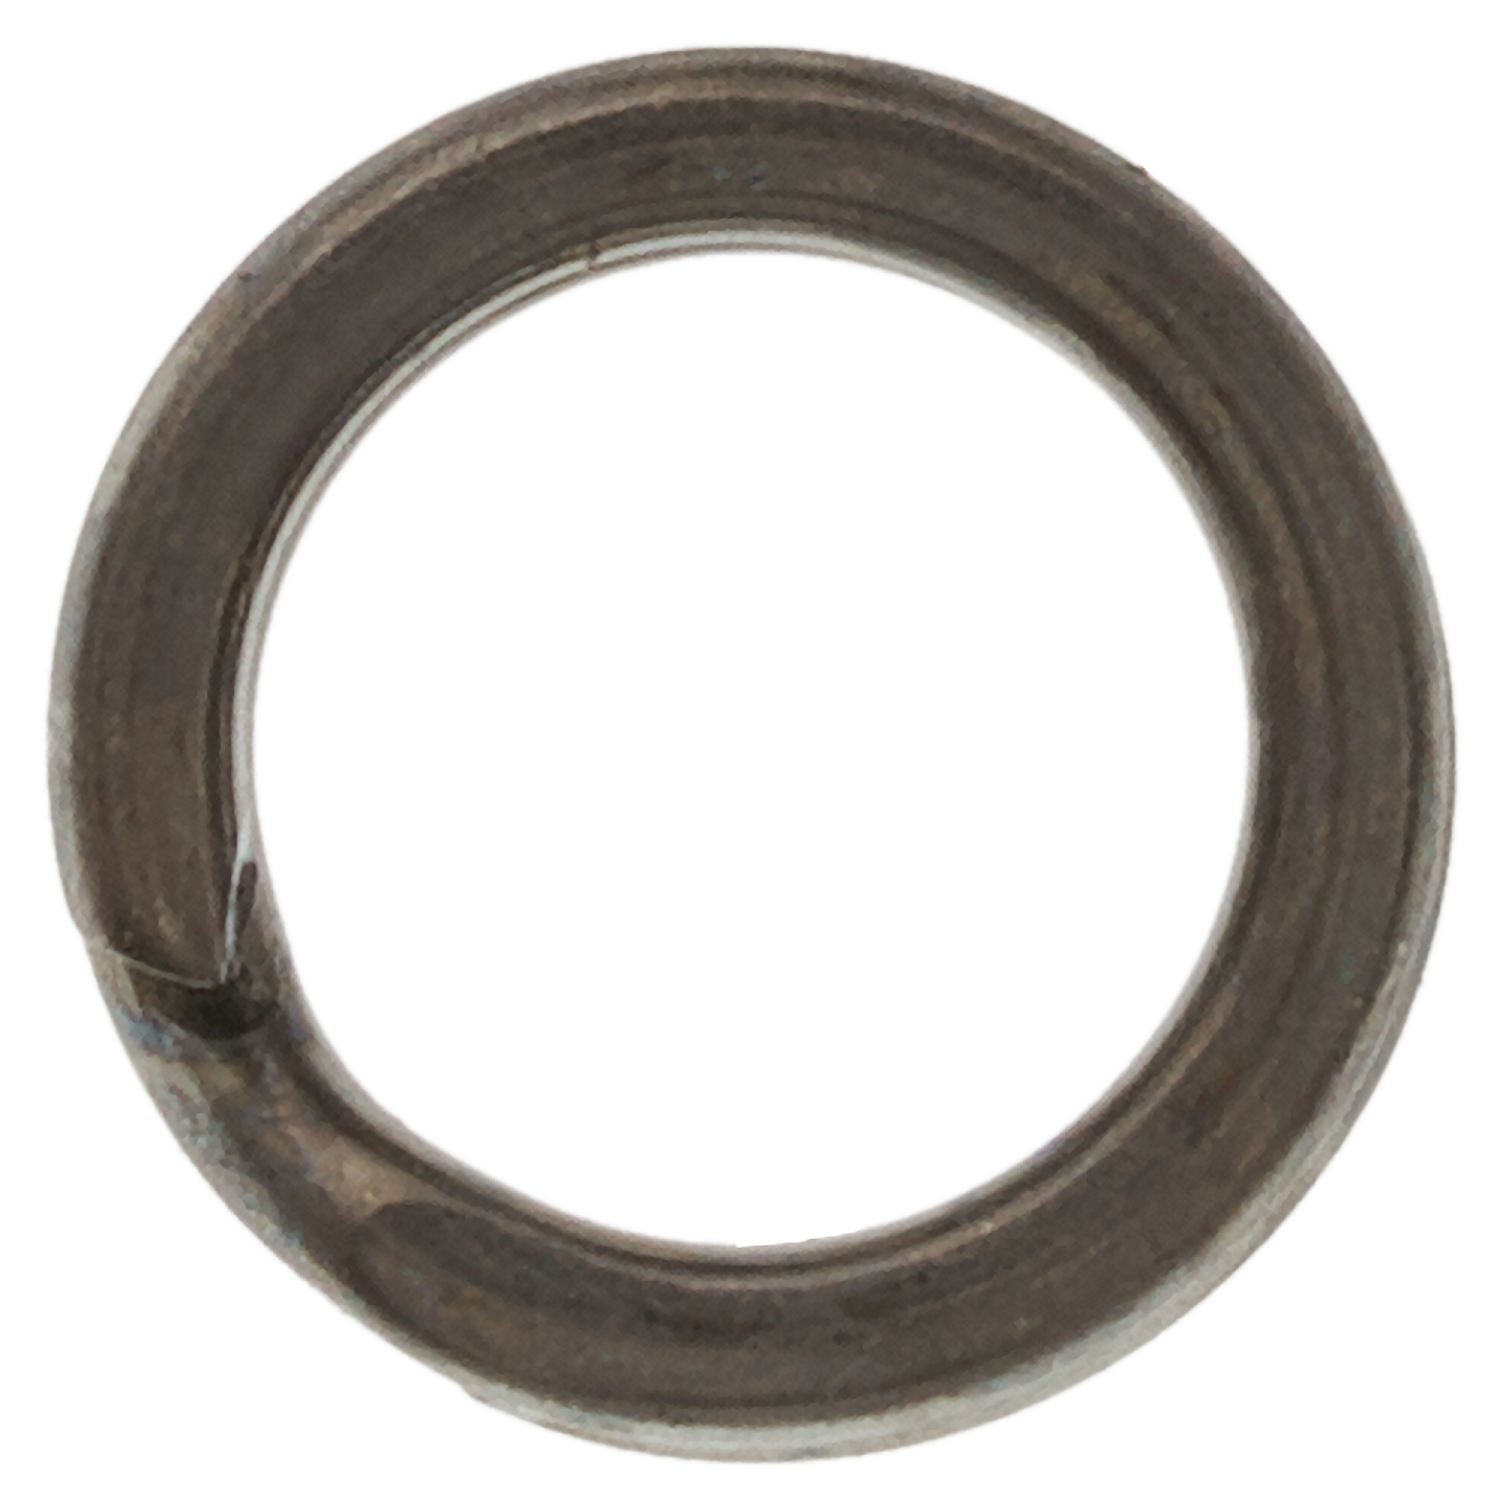 Кольцо заводное Hanzo SR 9010 плоское, усиленное #6 BLN